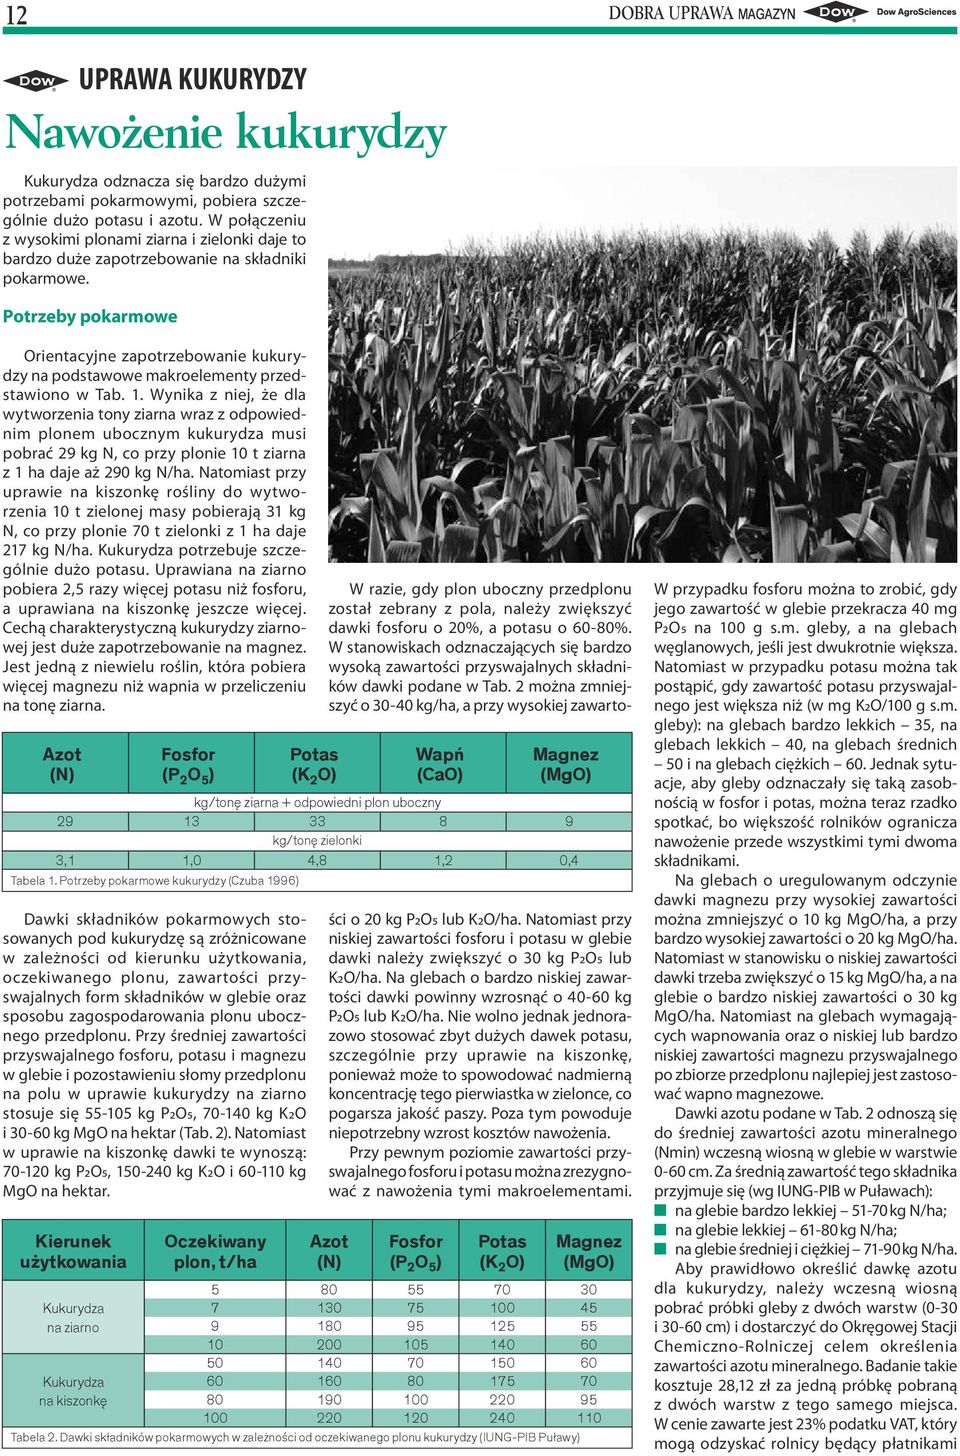 Potrzeby pokarmowe Orientacyjne zapotrzebowanie kukurydzy na podstawowe makroelementy przedstawiono w Tab. 1.